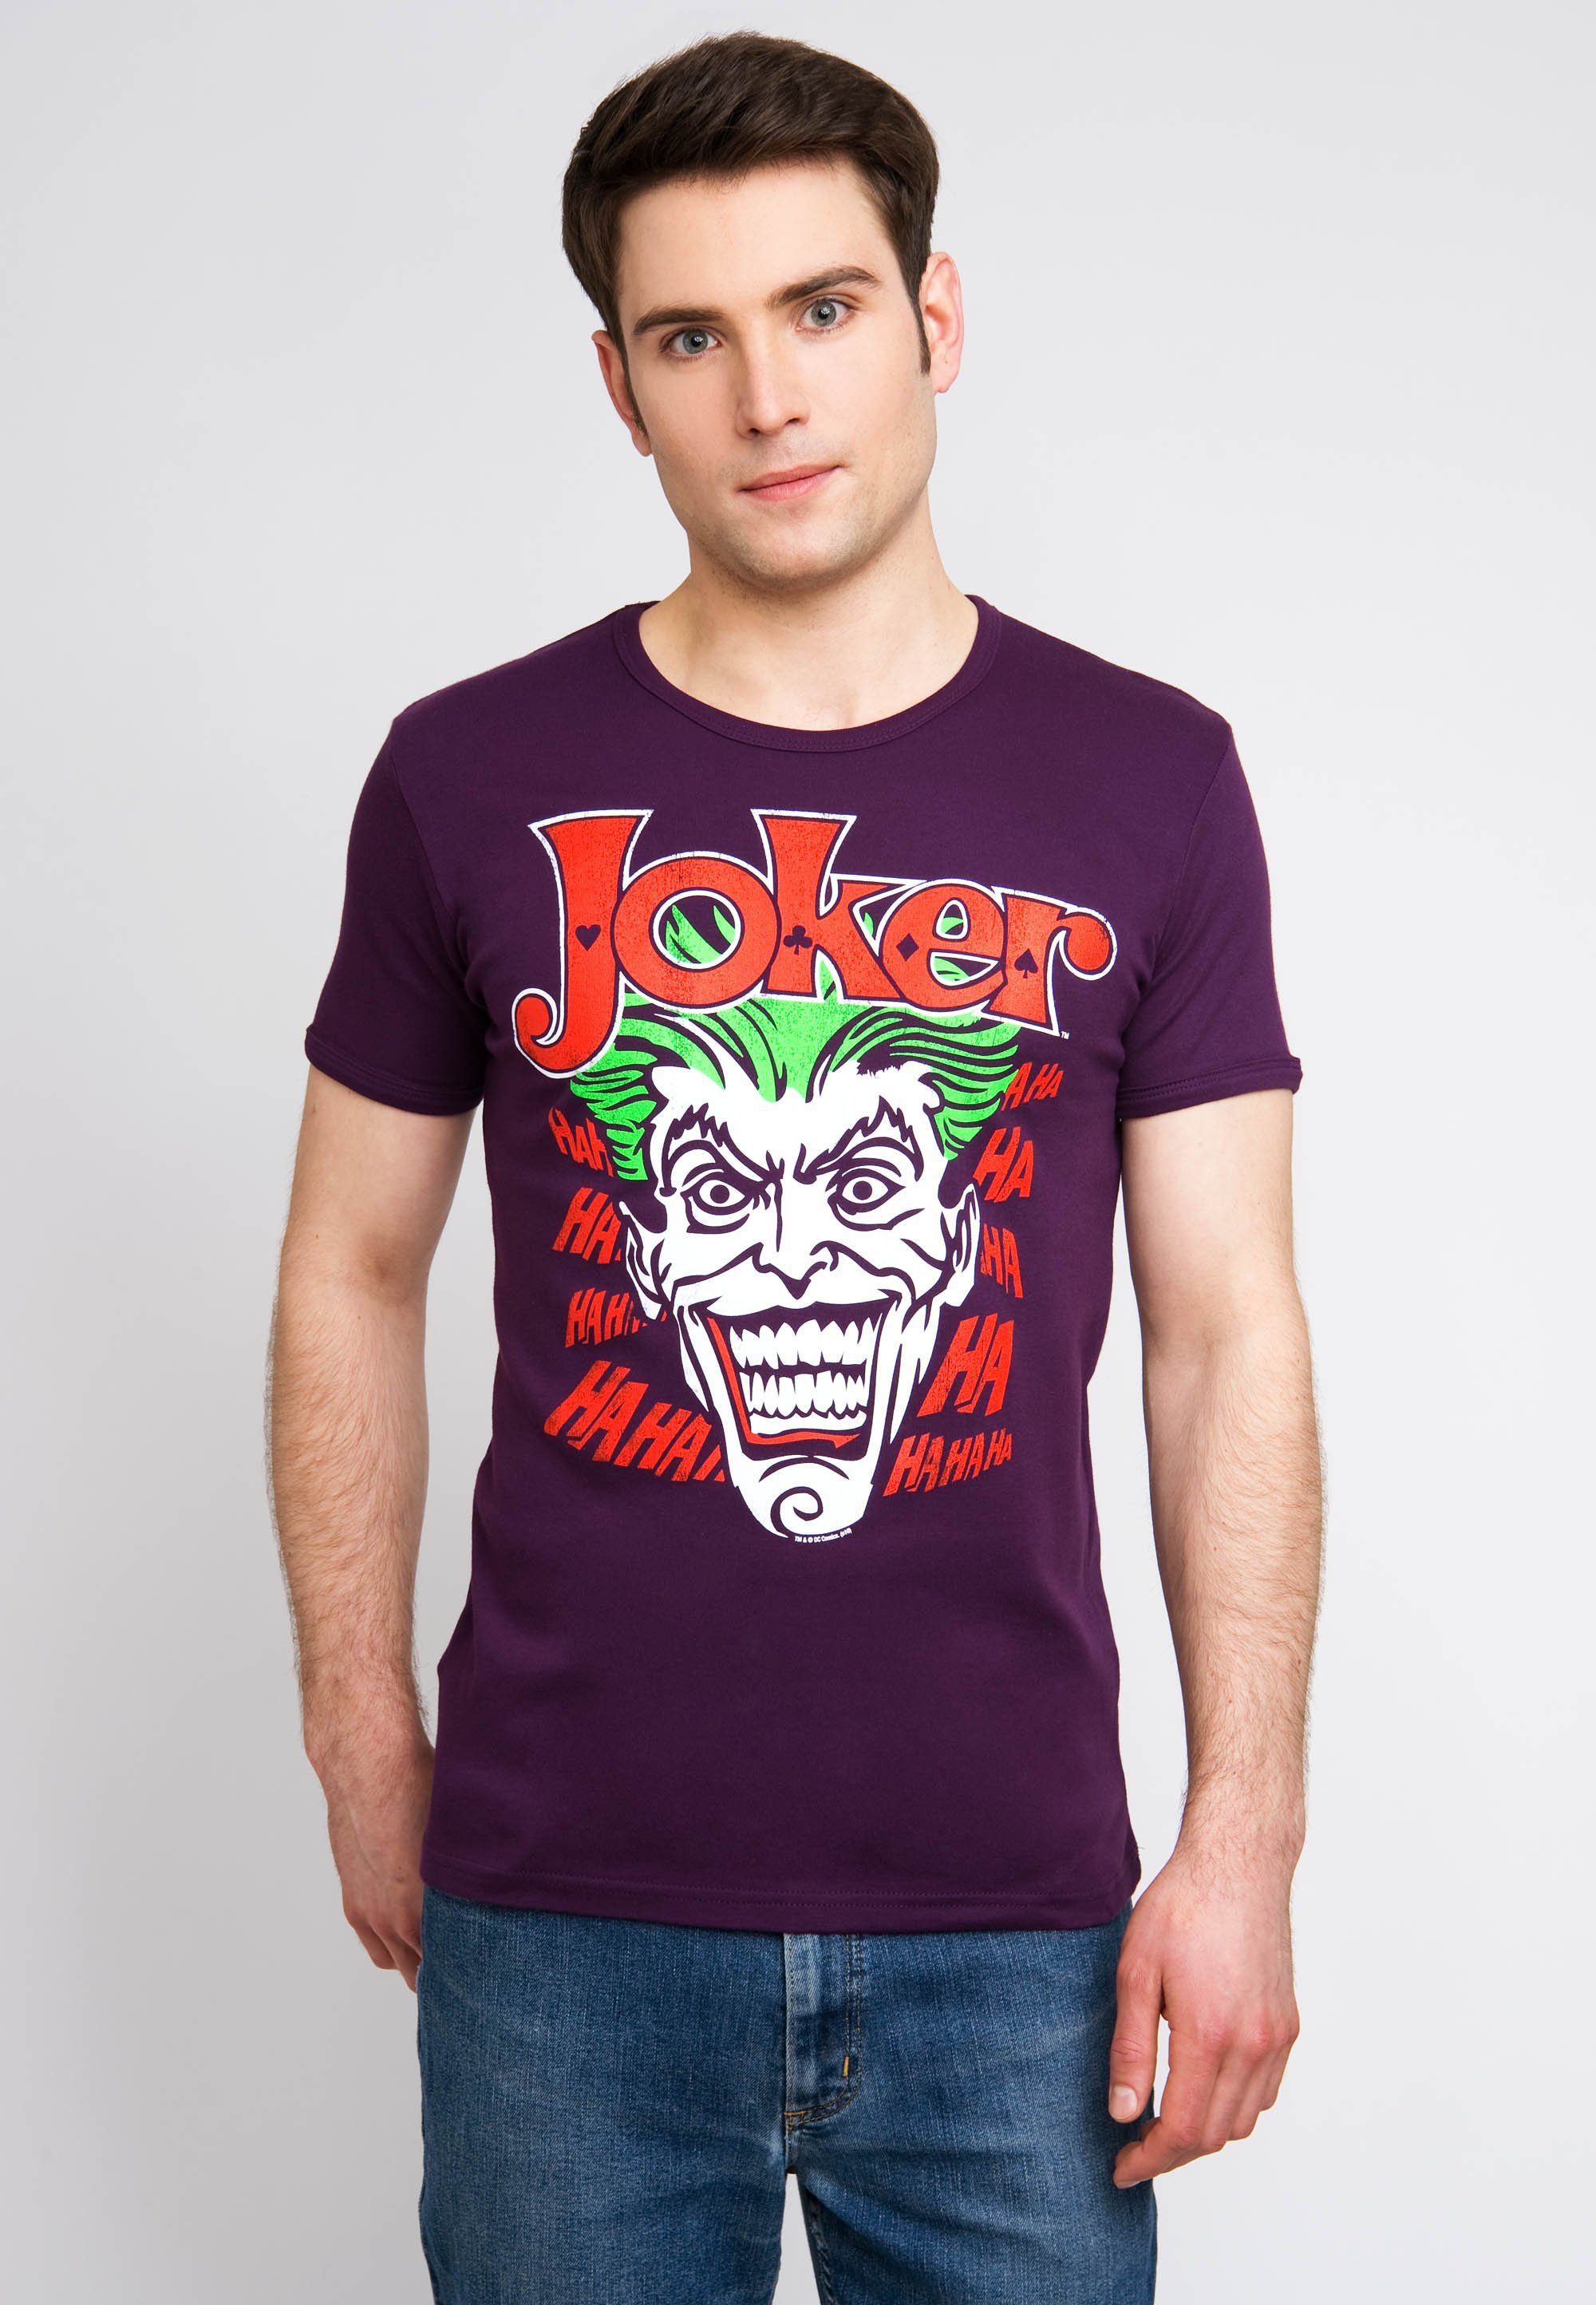 bunt Joker LOGOSHIRT Batman T-Shirt kultigem Joker-Print mit